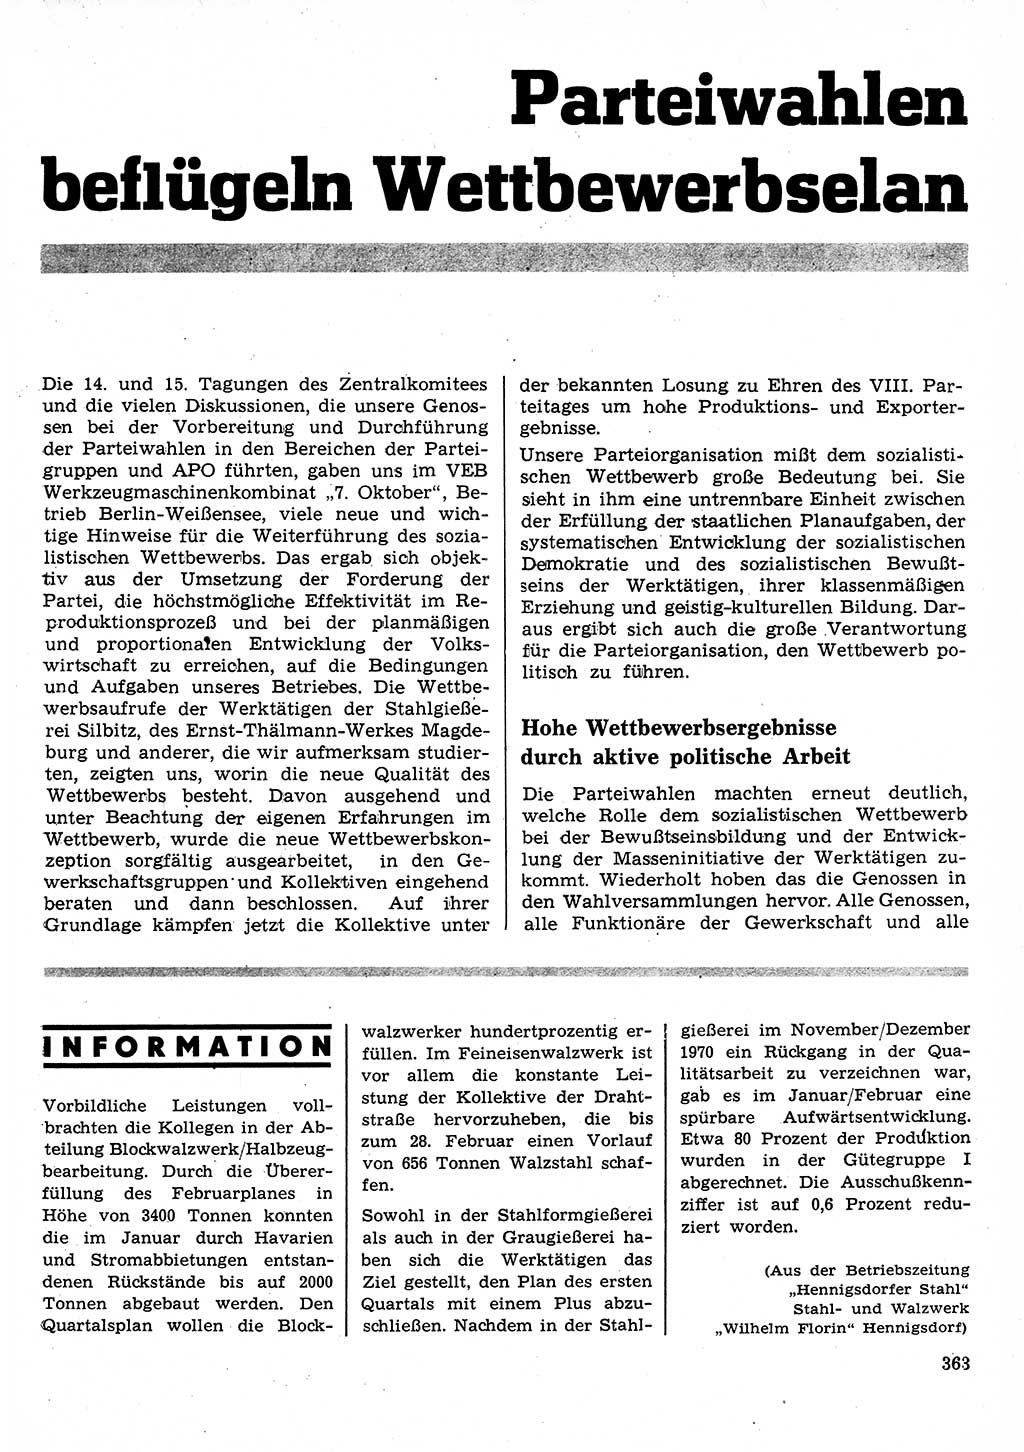 Neuer Weg (NW), Organ des Zentralkomitees (ZK) der SED (Sozialistische Einheitspartei Deutschlands) für Fragen des Parteilebens, 26. Jahrgang [Deutsche Demokratische Republik (DDR)] 1971, Seite 363 (NW ZK SED DDR 1971, S. 363)